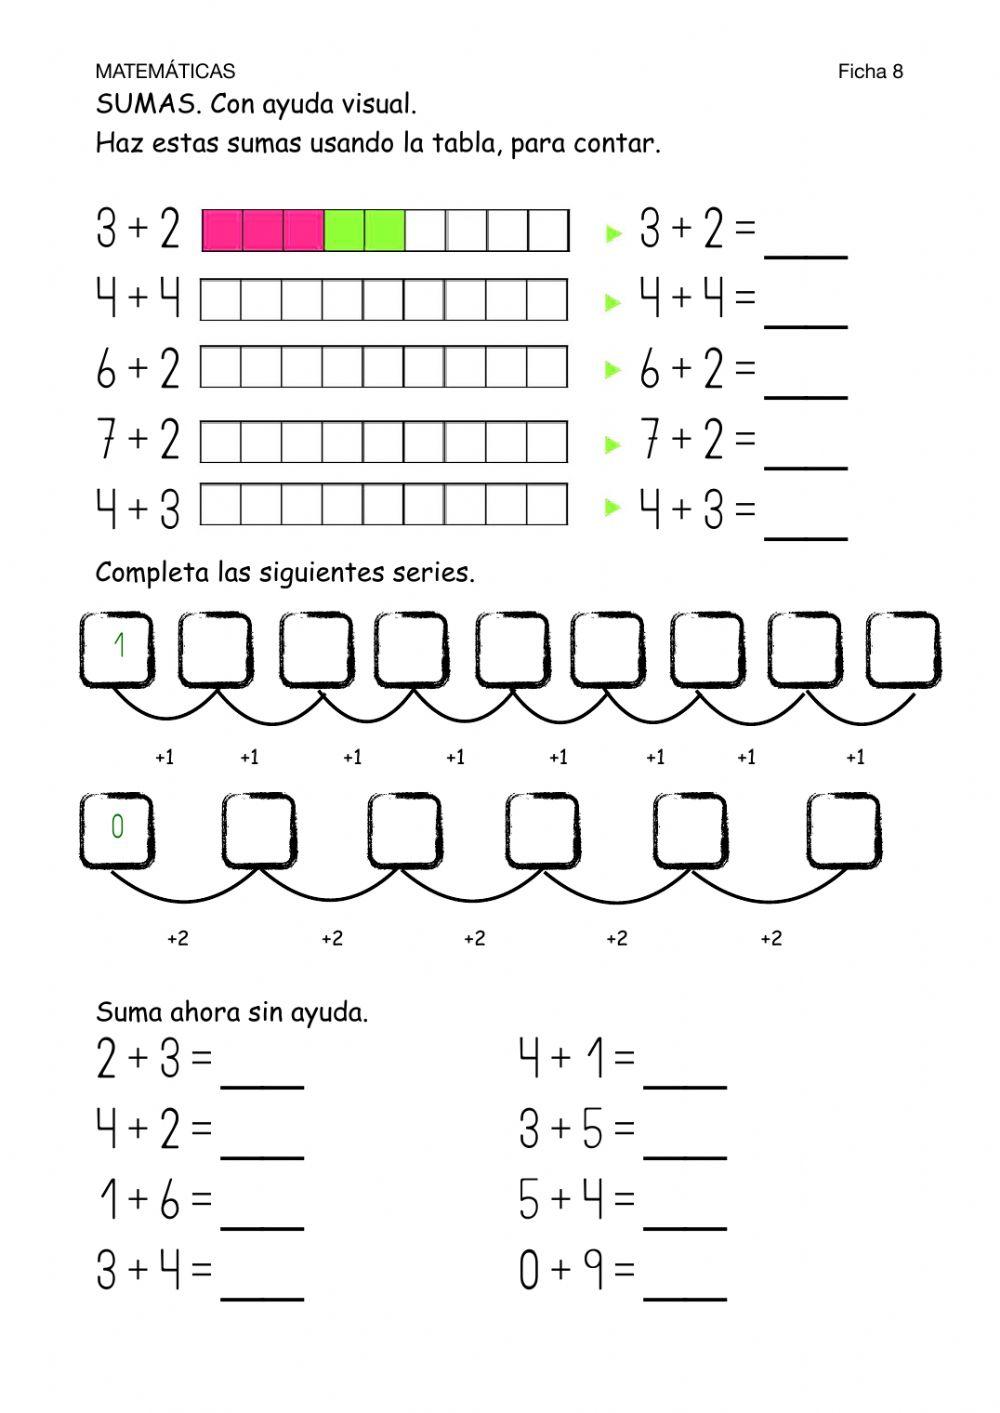 Matemáticas-Ficha 8-Sumas con ayuda visual